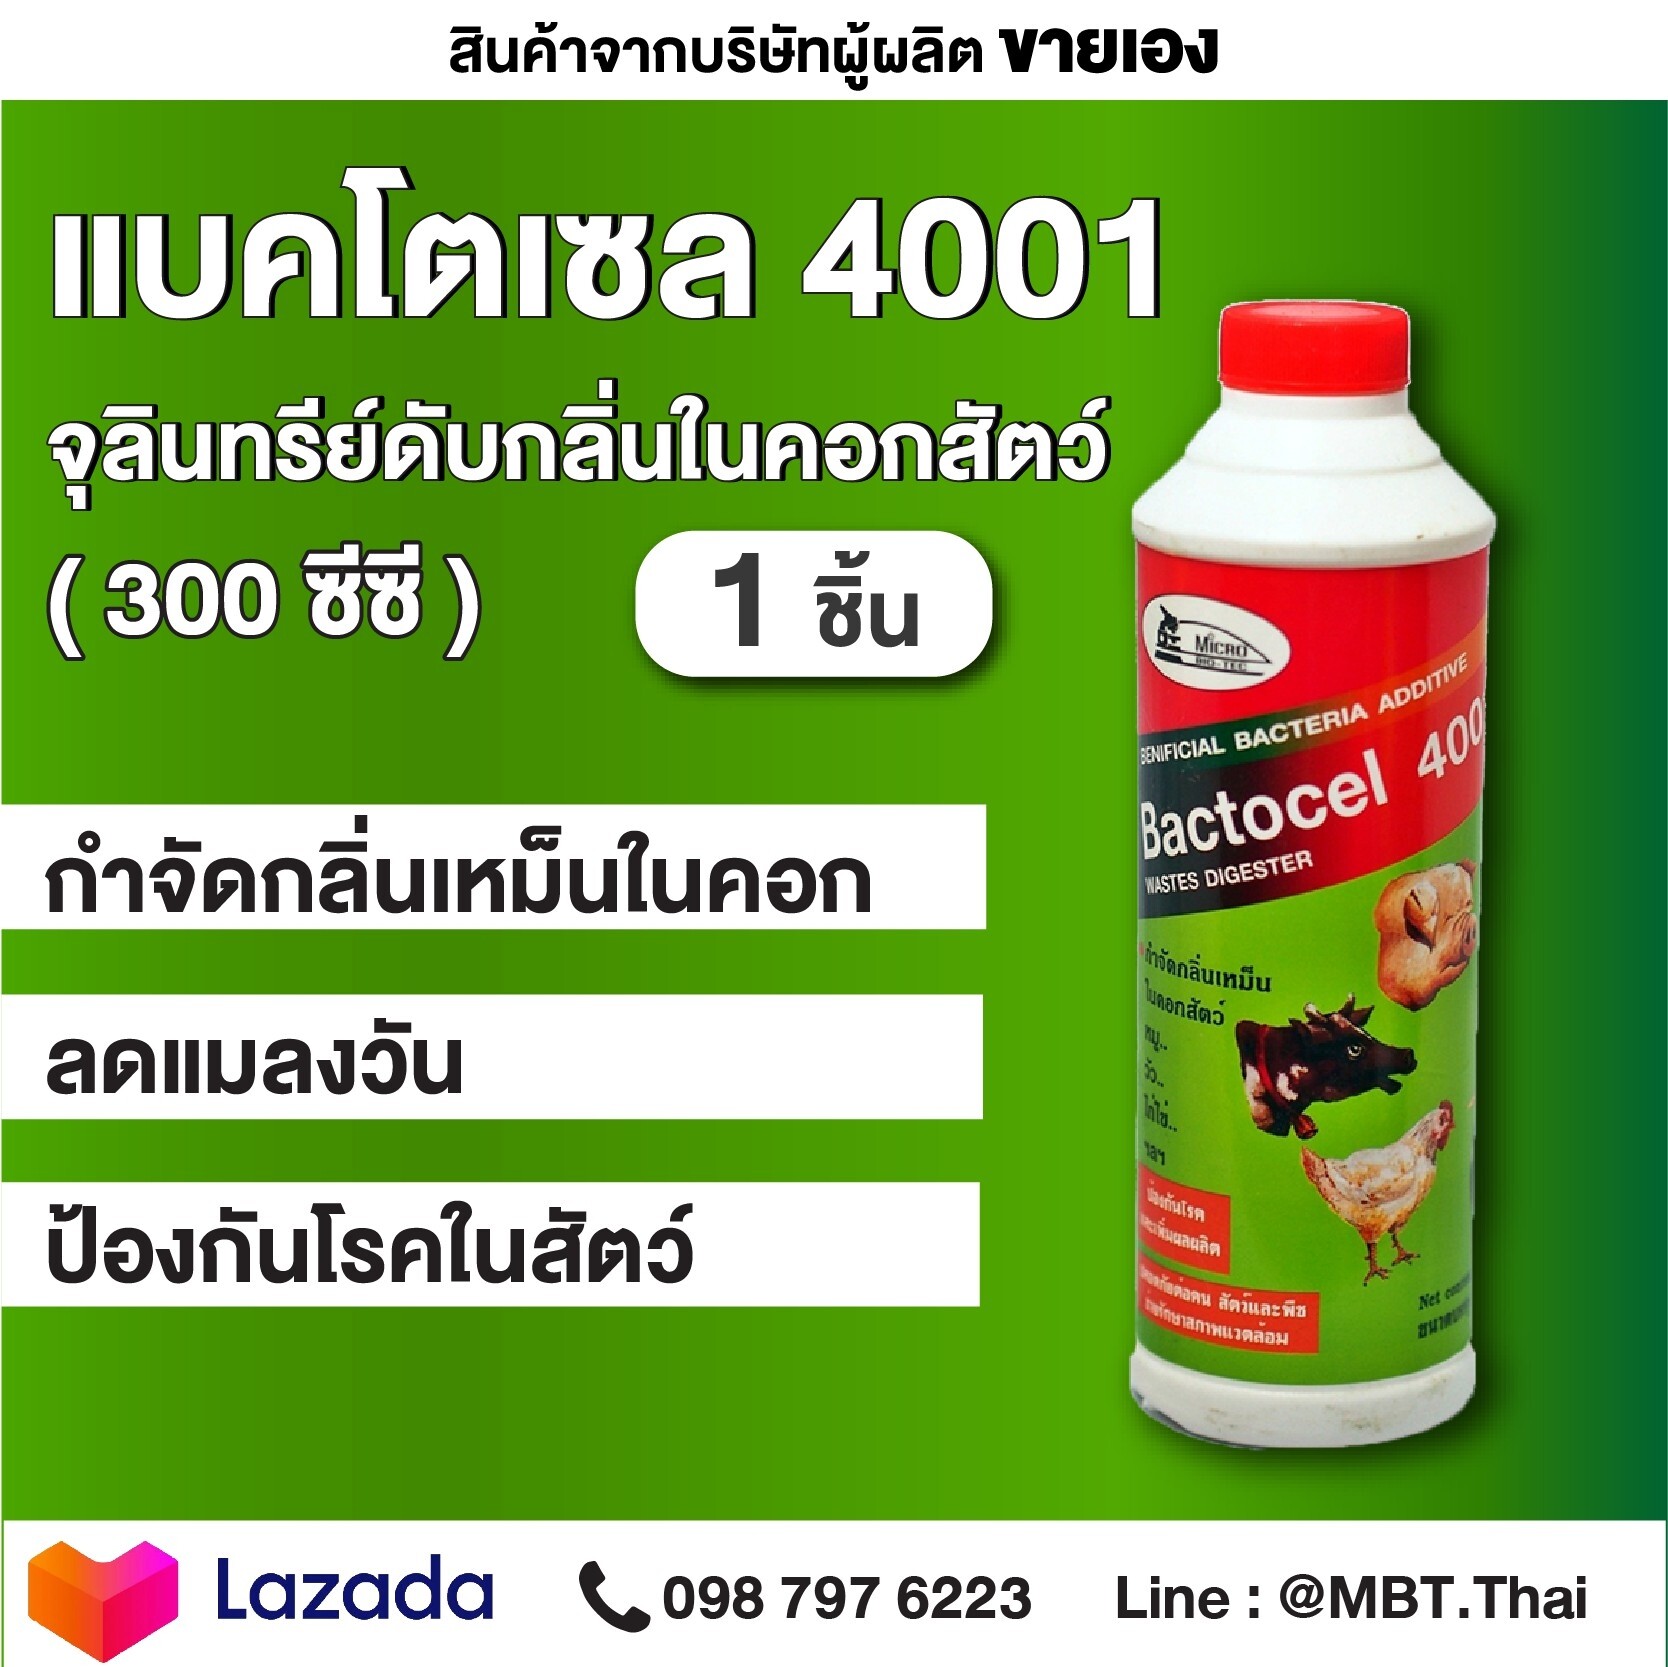 แบคโตเซล 4001 1 ขวด 300CC BACTOCEL จุลินทรีย์คอกสัตว์ วัว หมู ไก่ แพะ ม้า ลดแมลงวัน และป้องกันโรคในสัตว์ จุลินทรีย์สัตว์ รักษาโรคในสัตว์